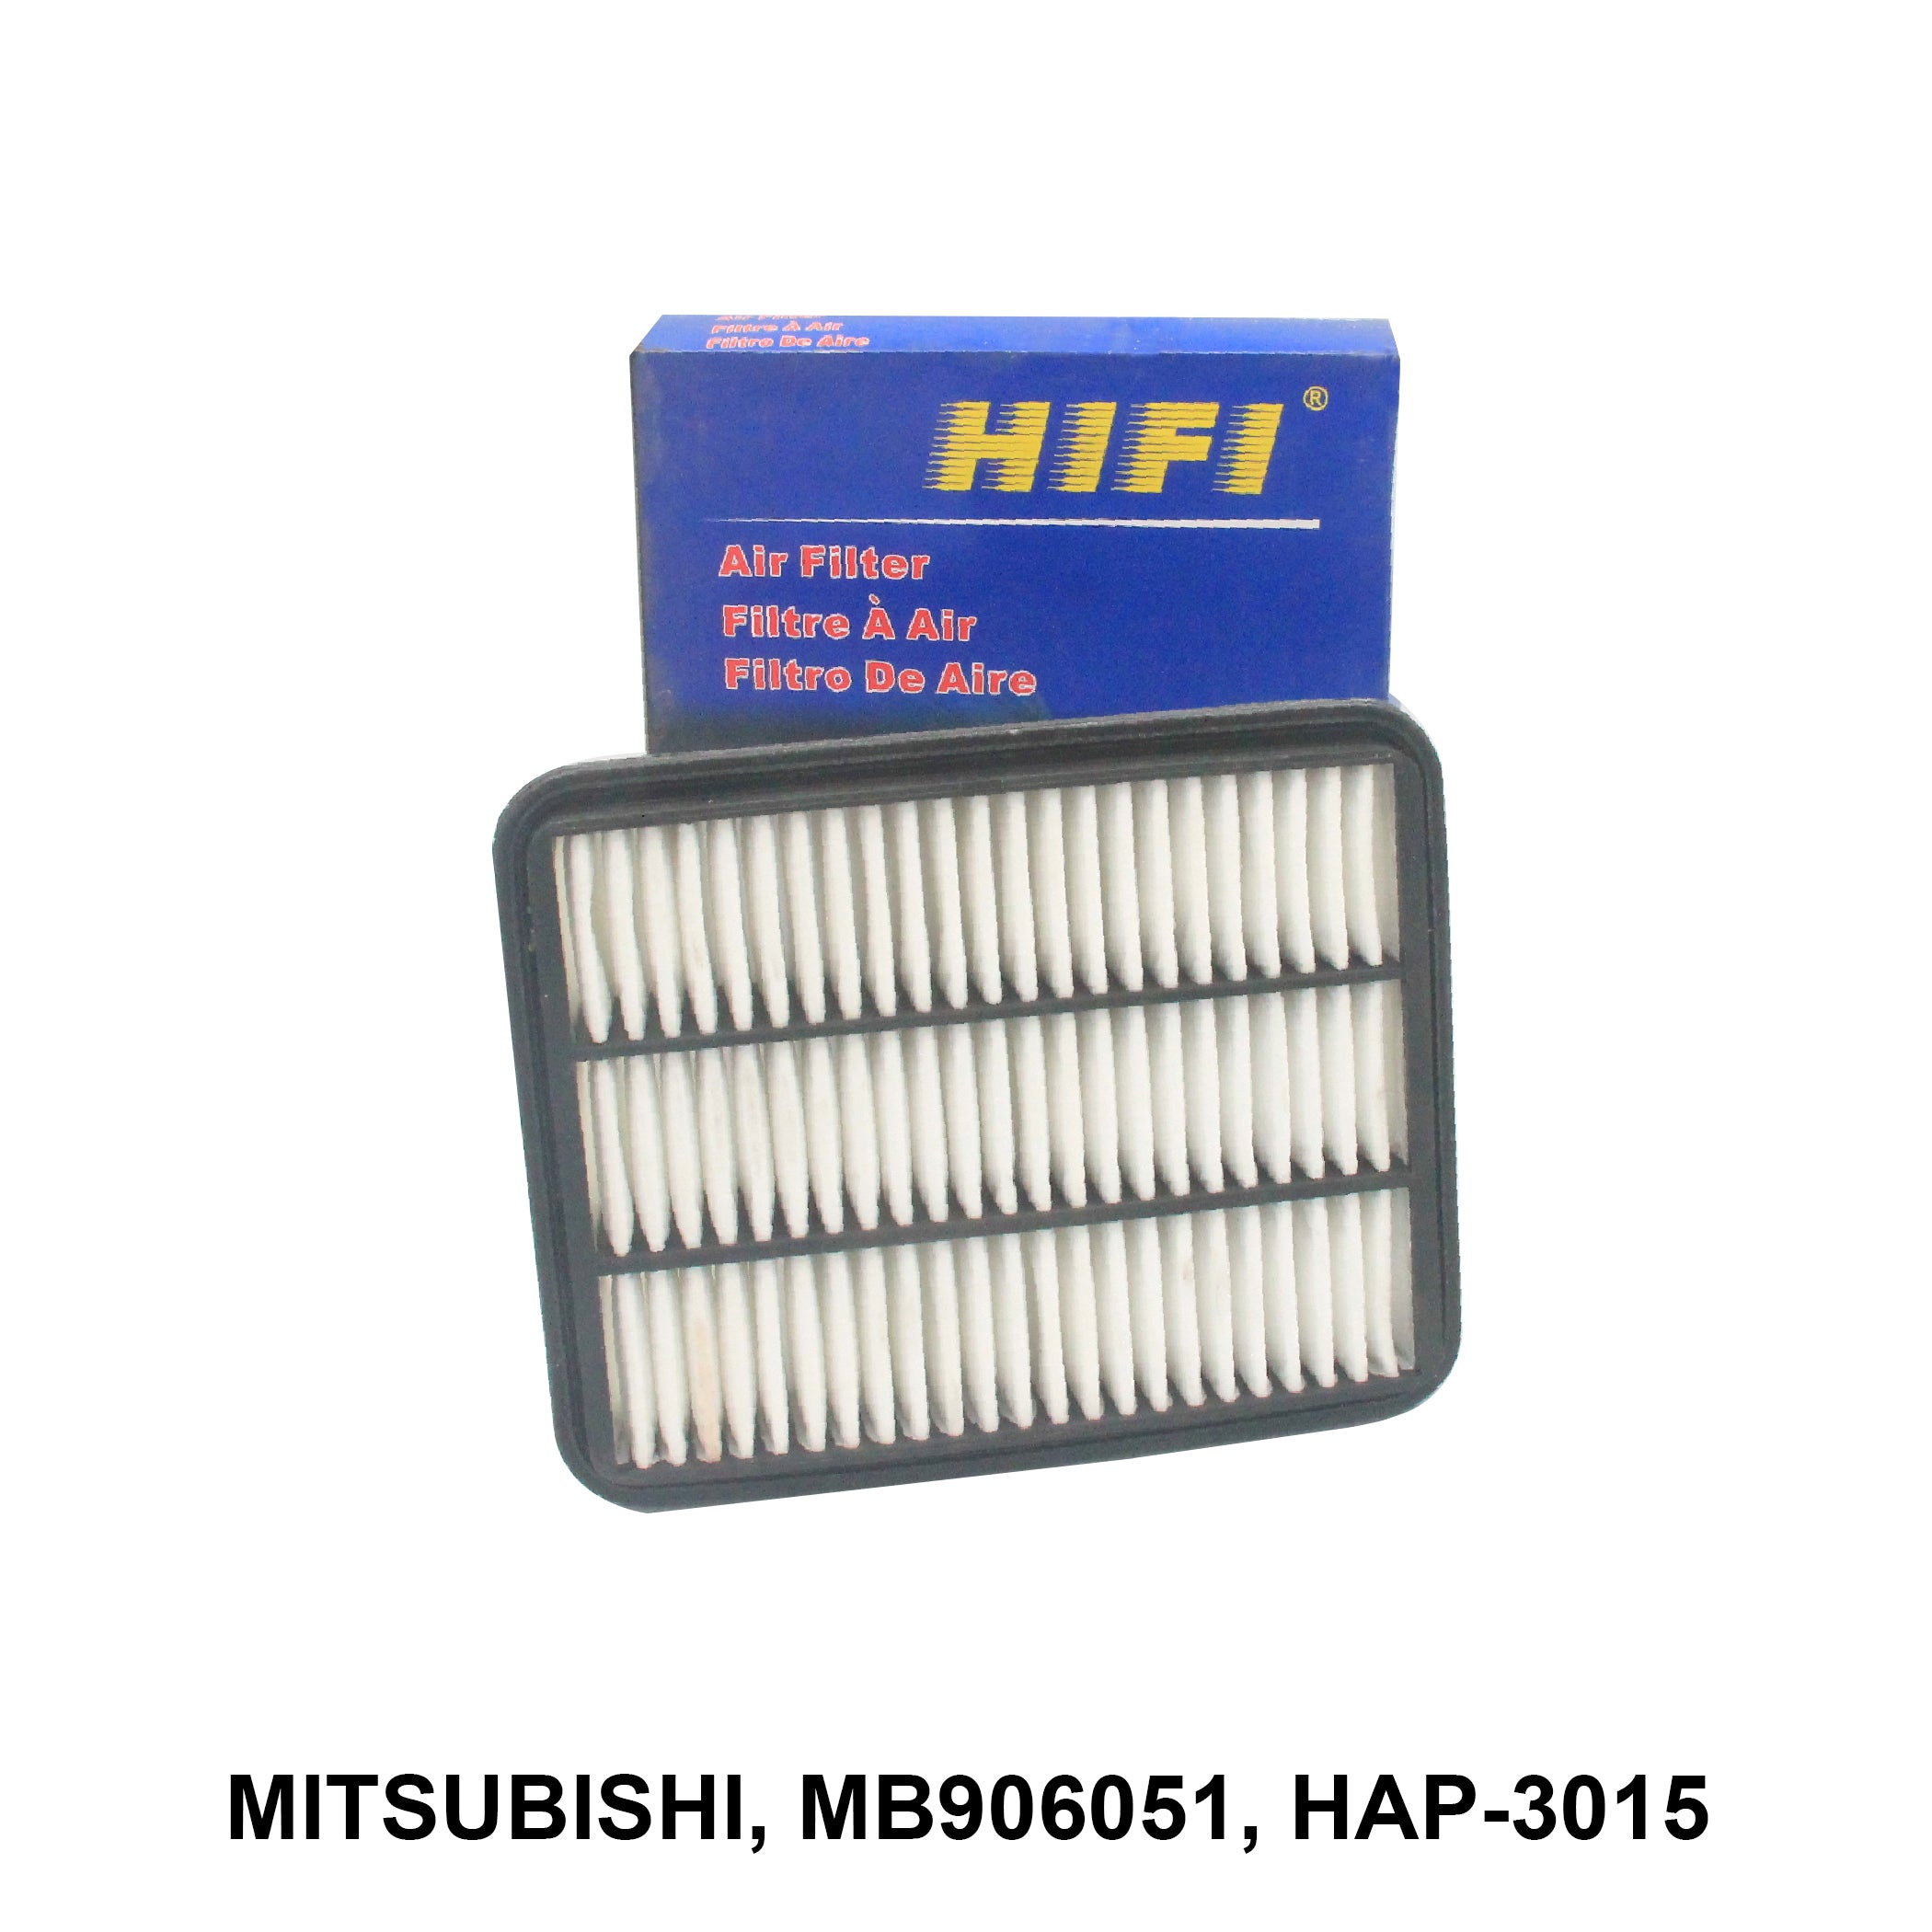 Air Filter, HIFI, MB906051, HAP-3015 (000154)